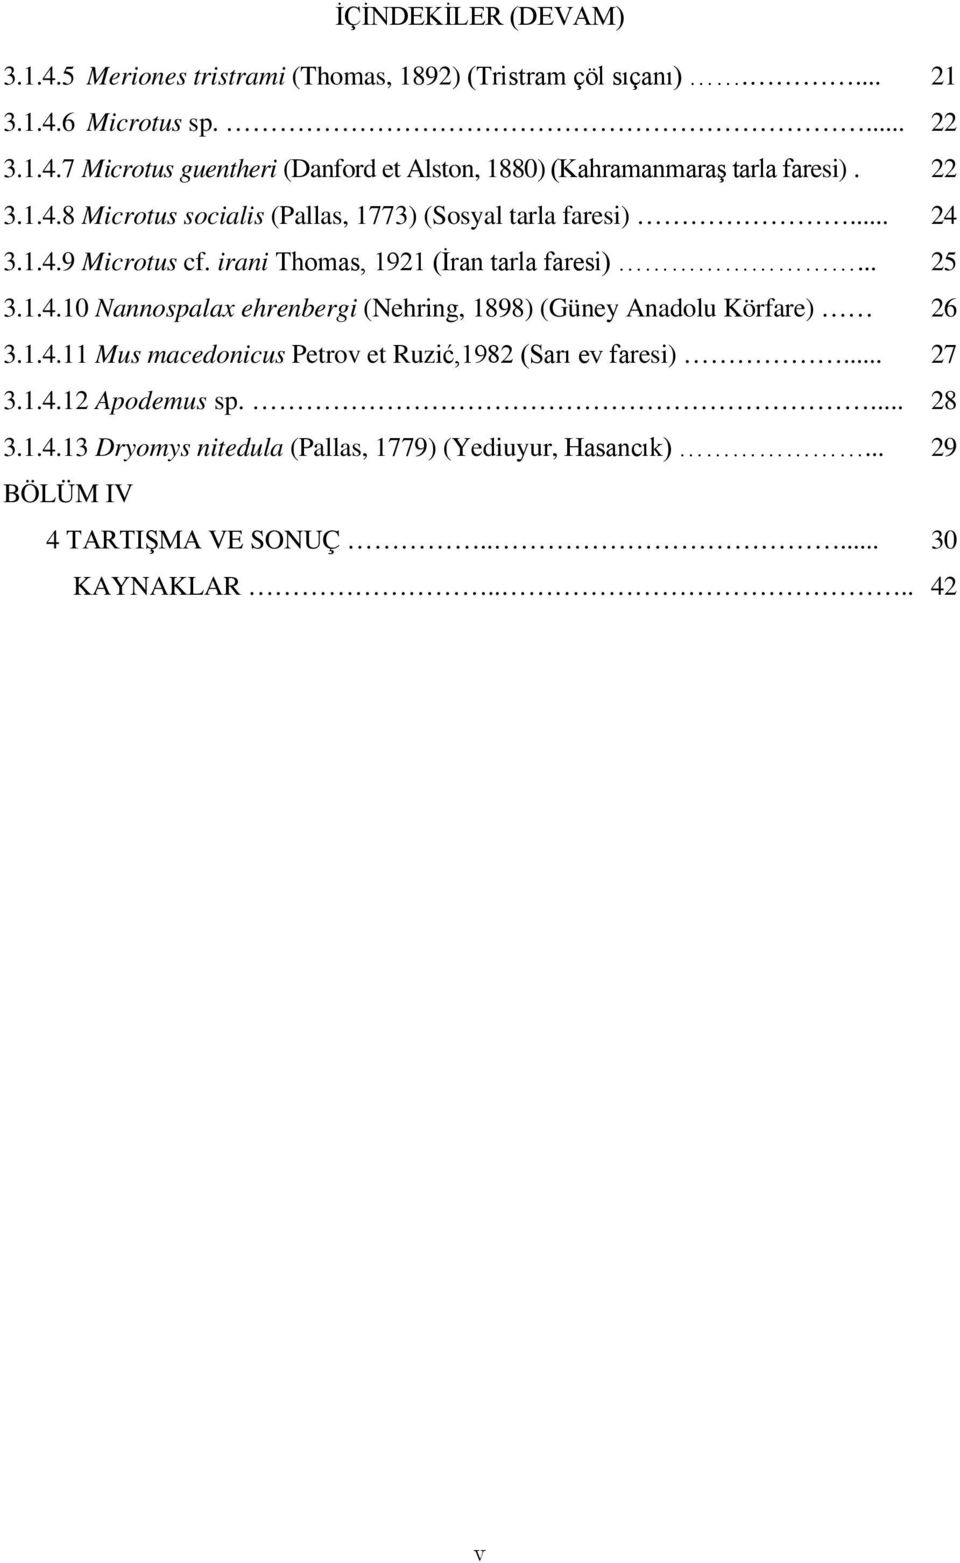 1.4.11 Mus macedonicus Petrov et Ruzić,1982 (Sarı ev faresi)... 27 3.1.4.12 Apodemus sp.... 28 3.1.4.13 Dryomys nitedula (Pallas, 1779) (Yediuyur, Hasancık).